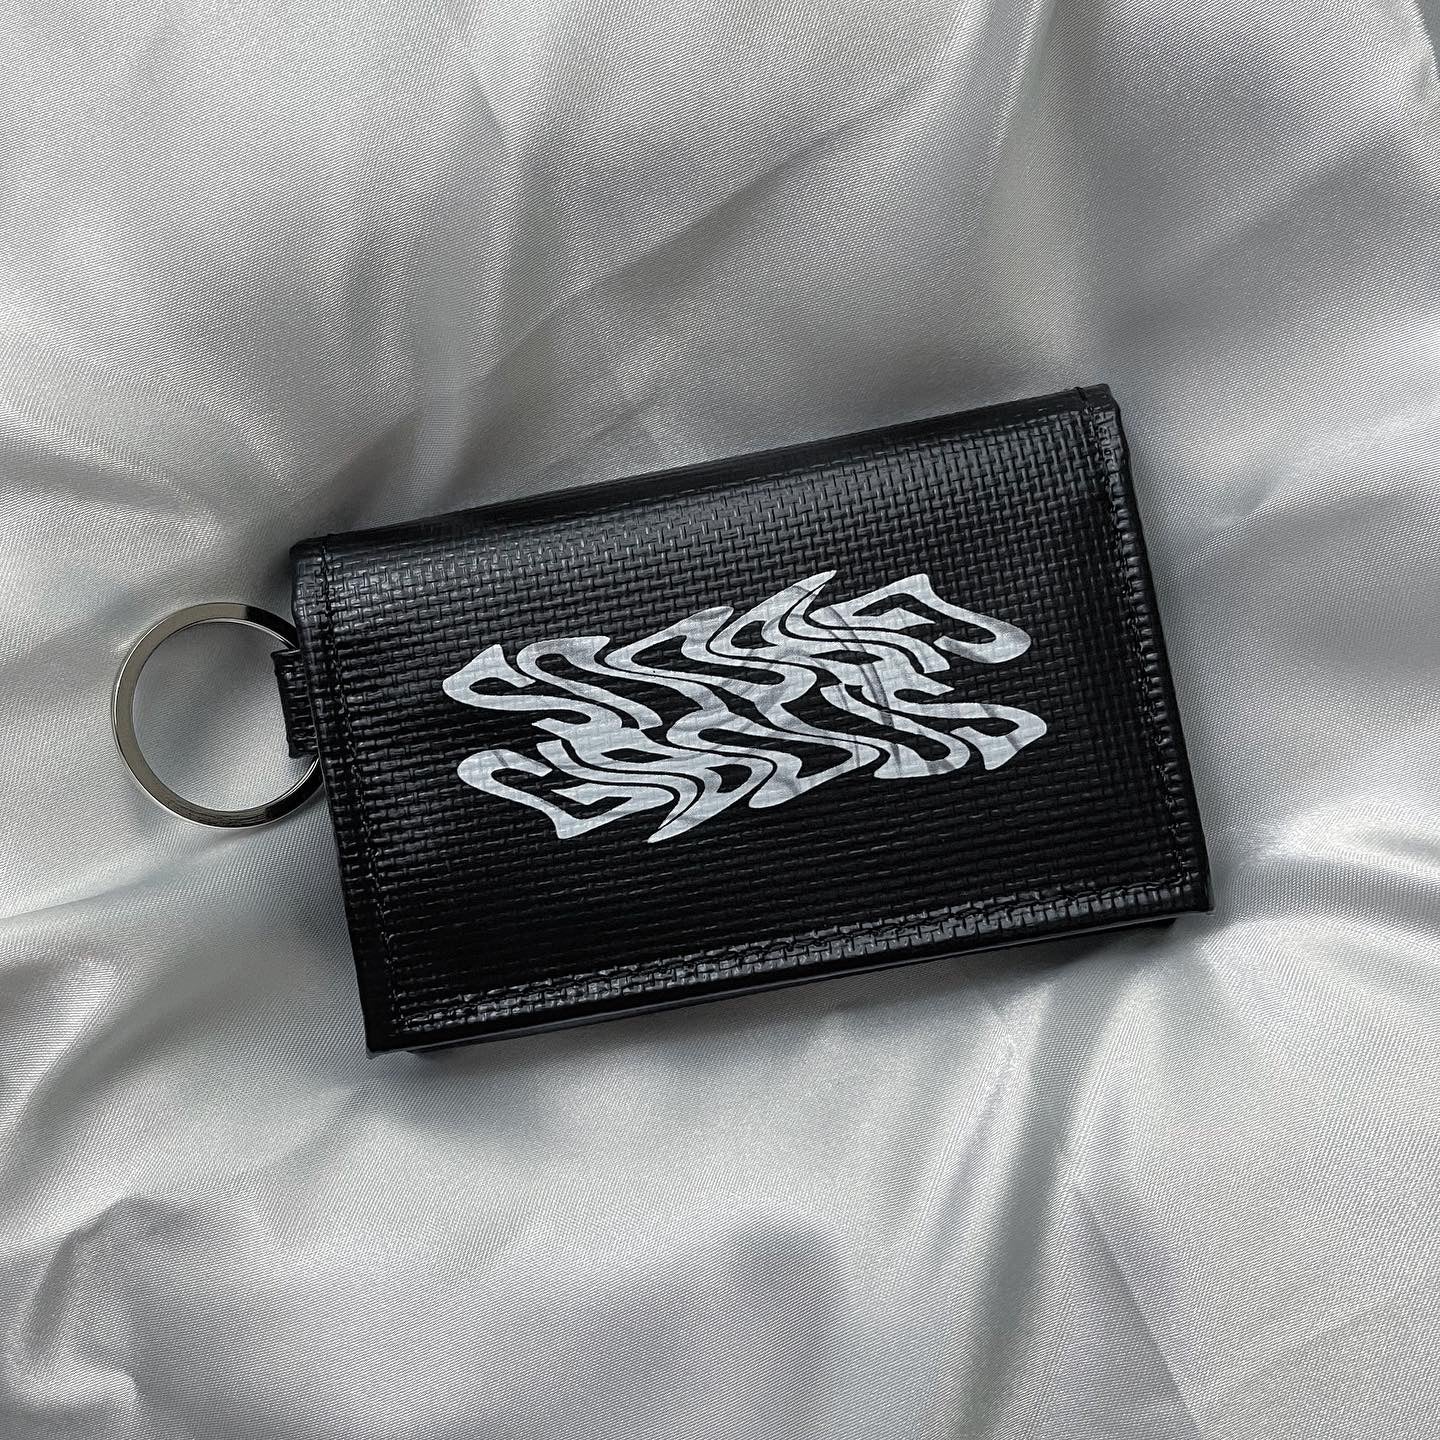 gibous snake bone Mini Key wallet